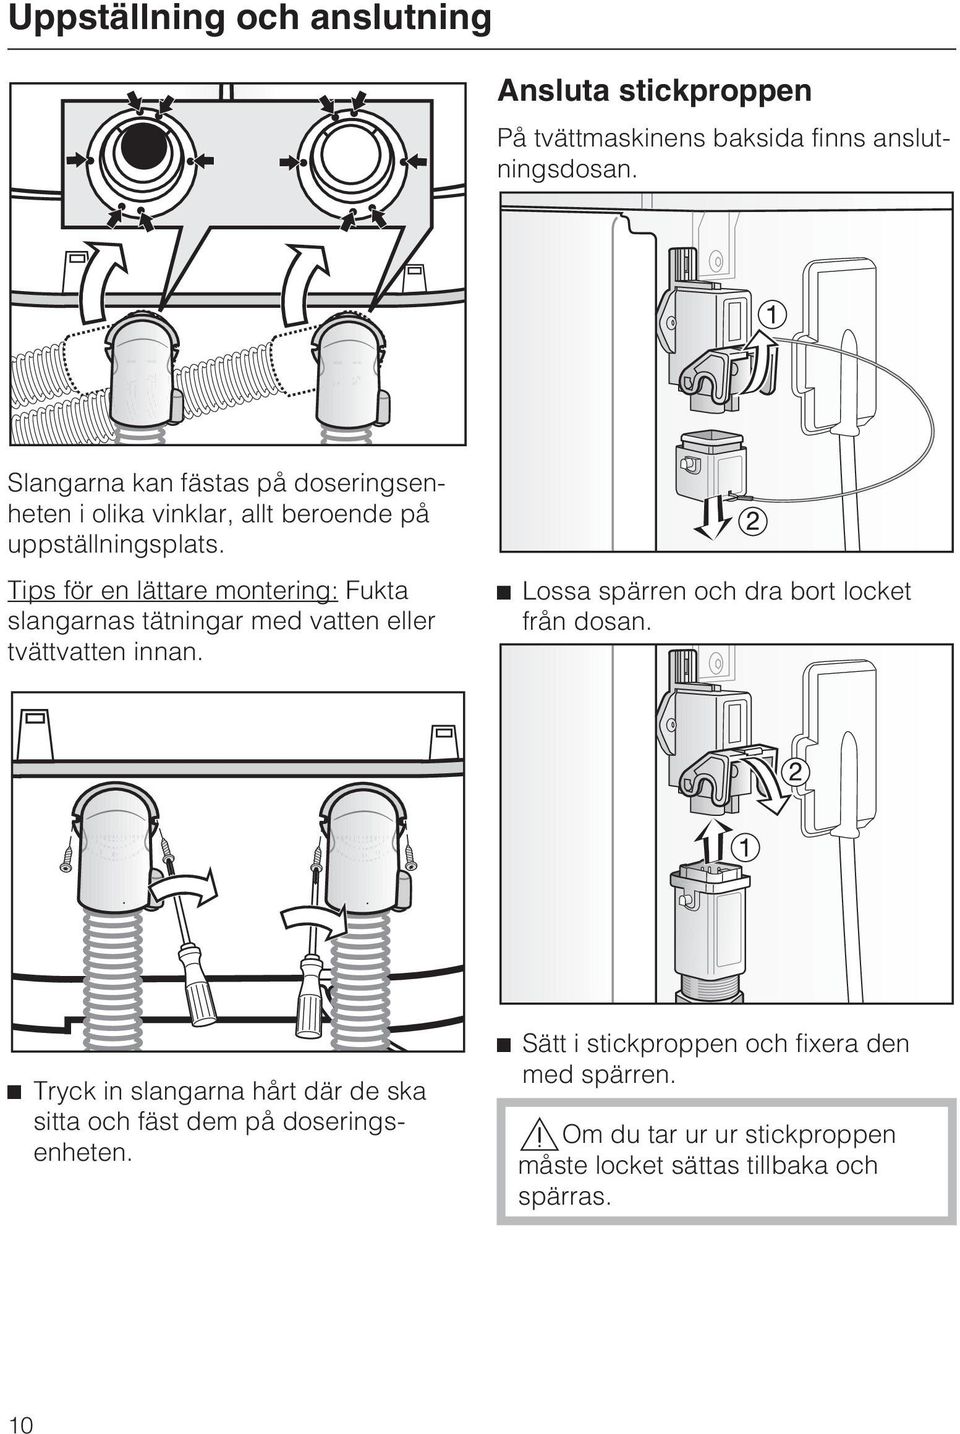 Tips för en lättare montering: Fukta slangarnas tätningar med vatten eller tvättvatten innan.